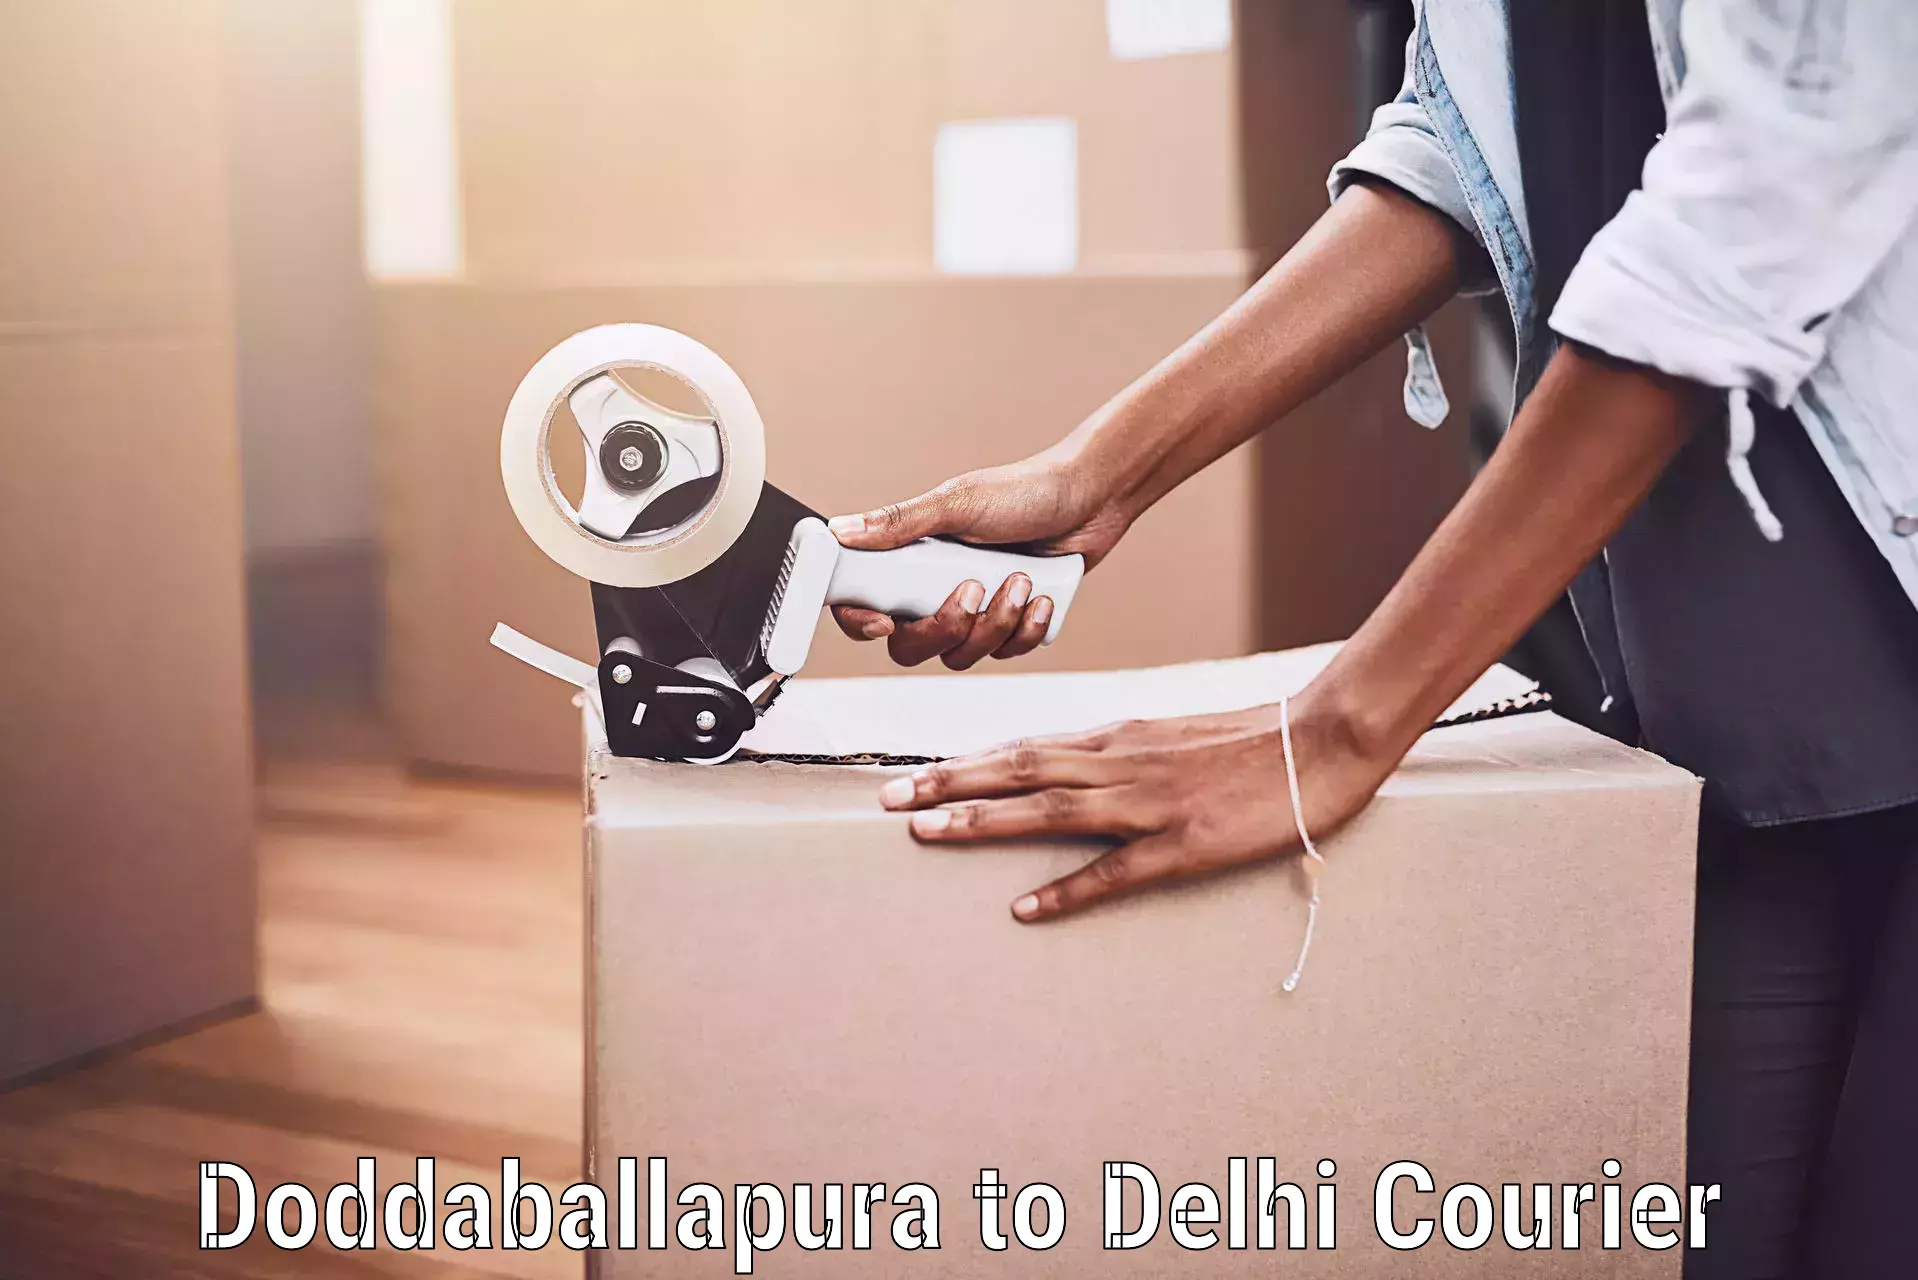 Baggage delivery support Doddaballapura to Delhi